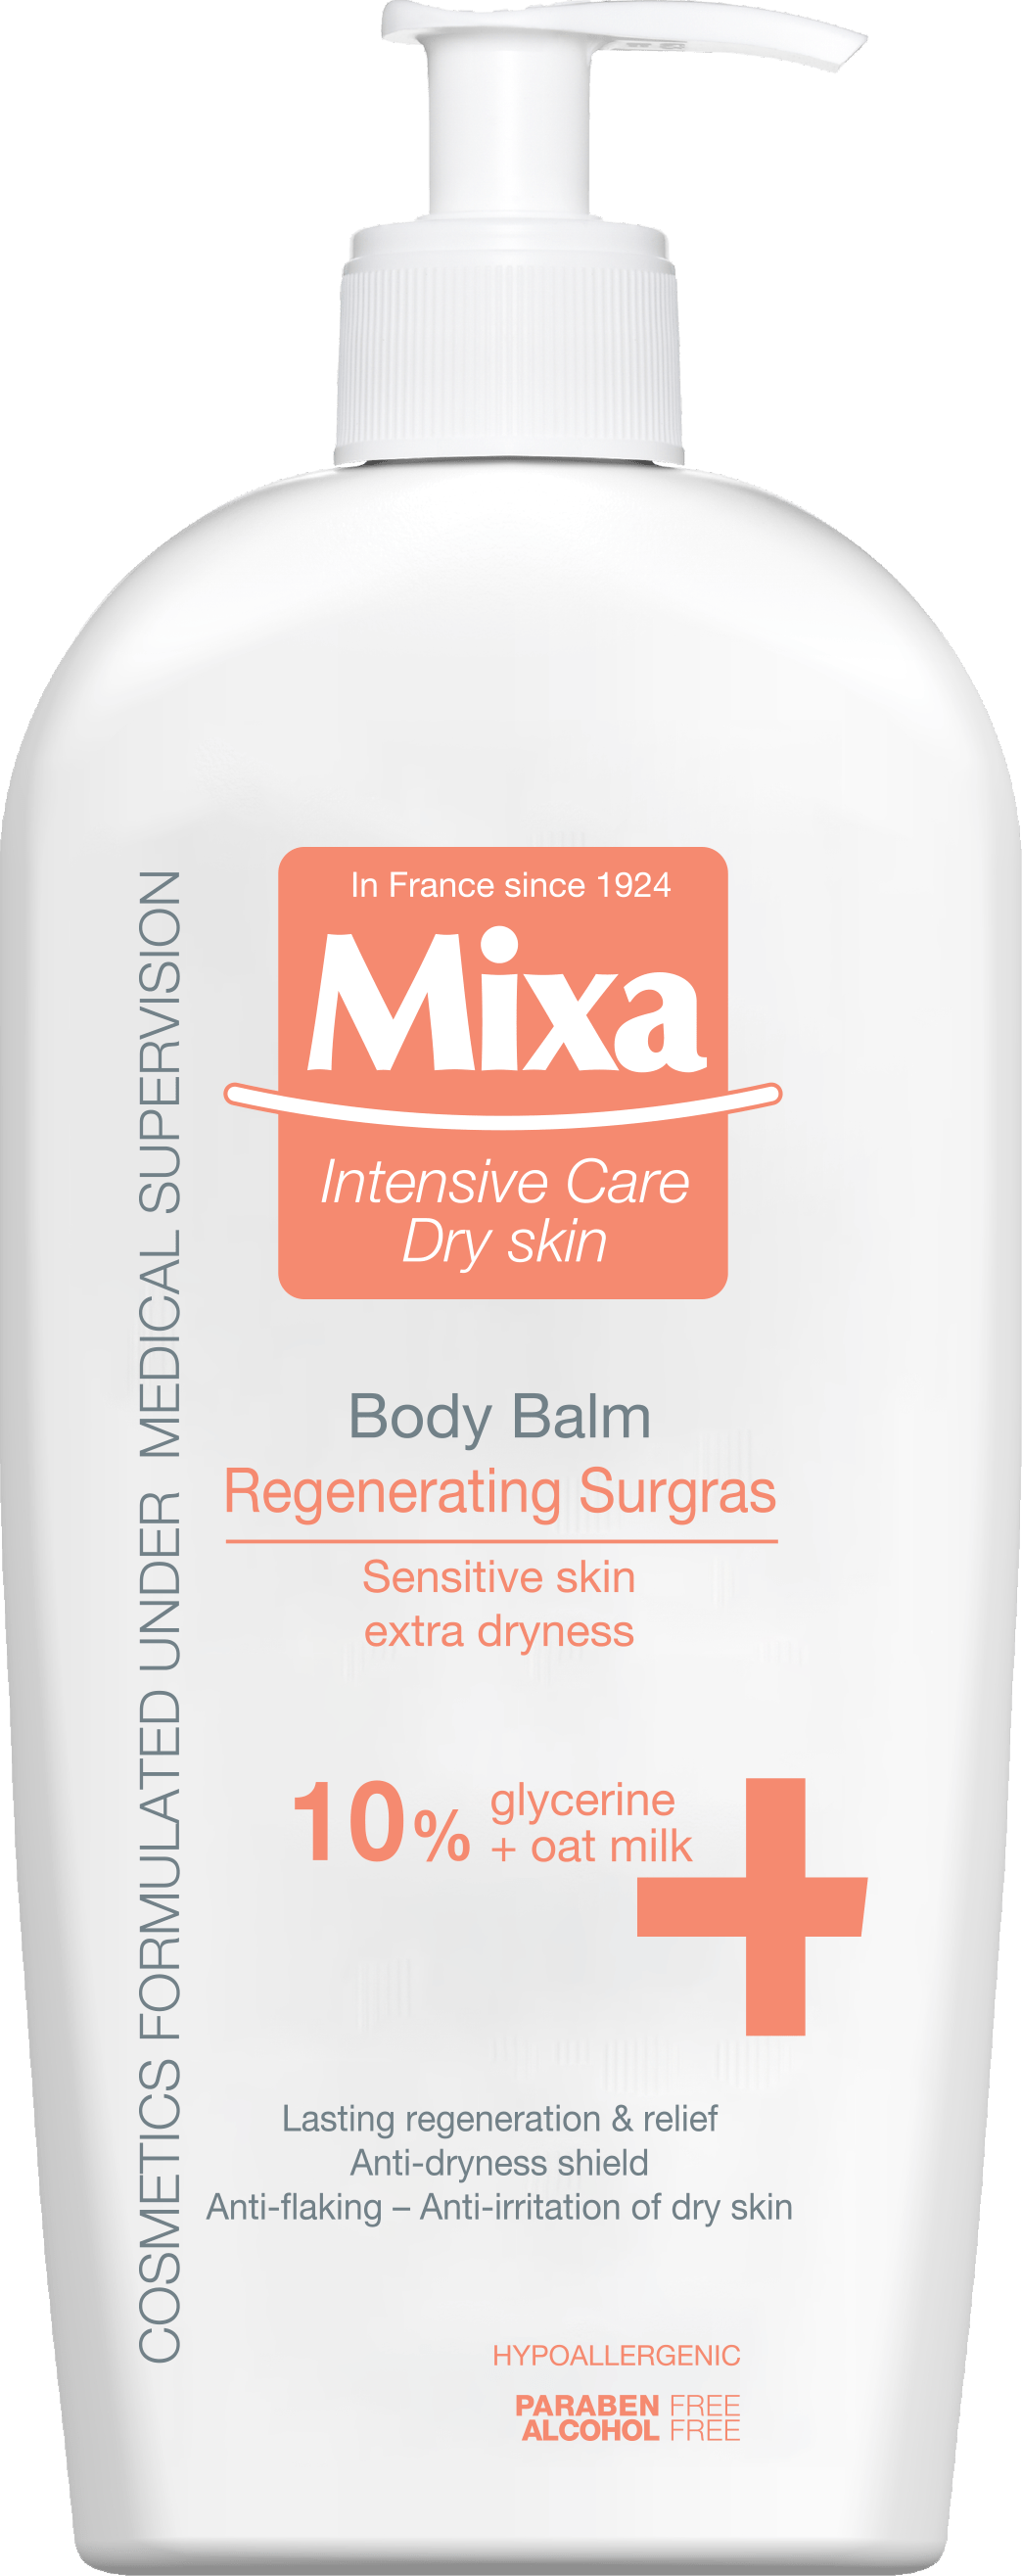 Крем-уход Mixa Body & hands для сухой и чувствительной кожи тела, 400 мл